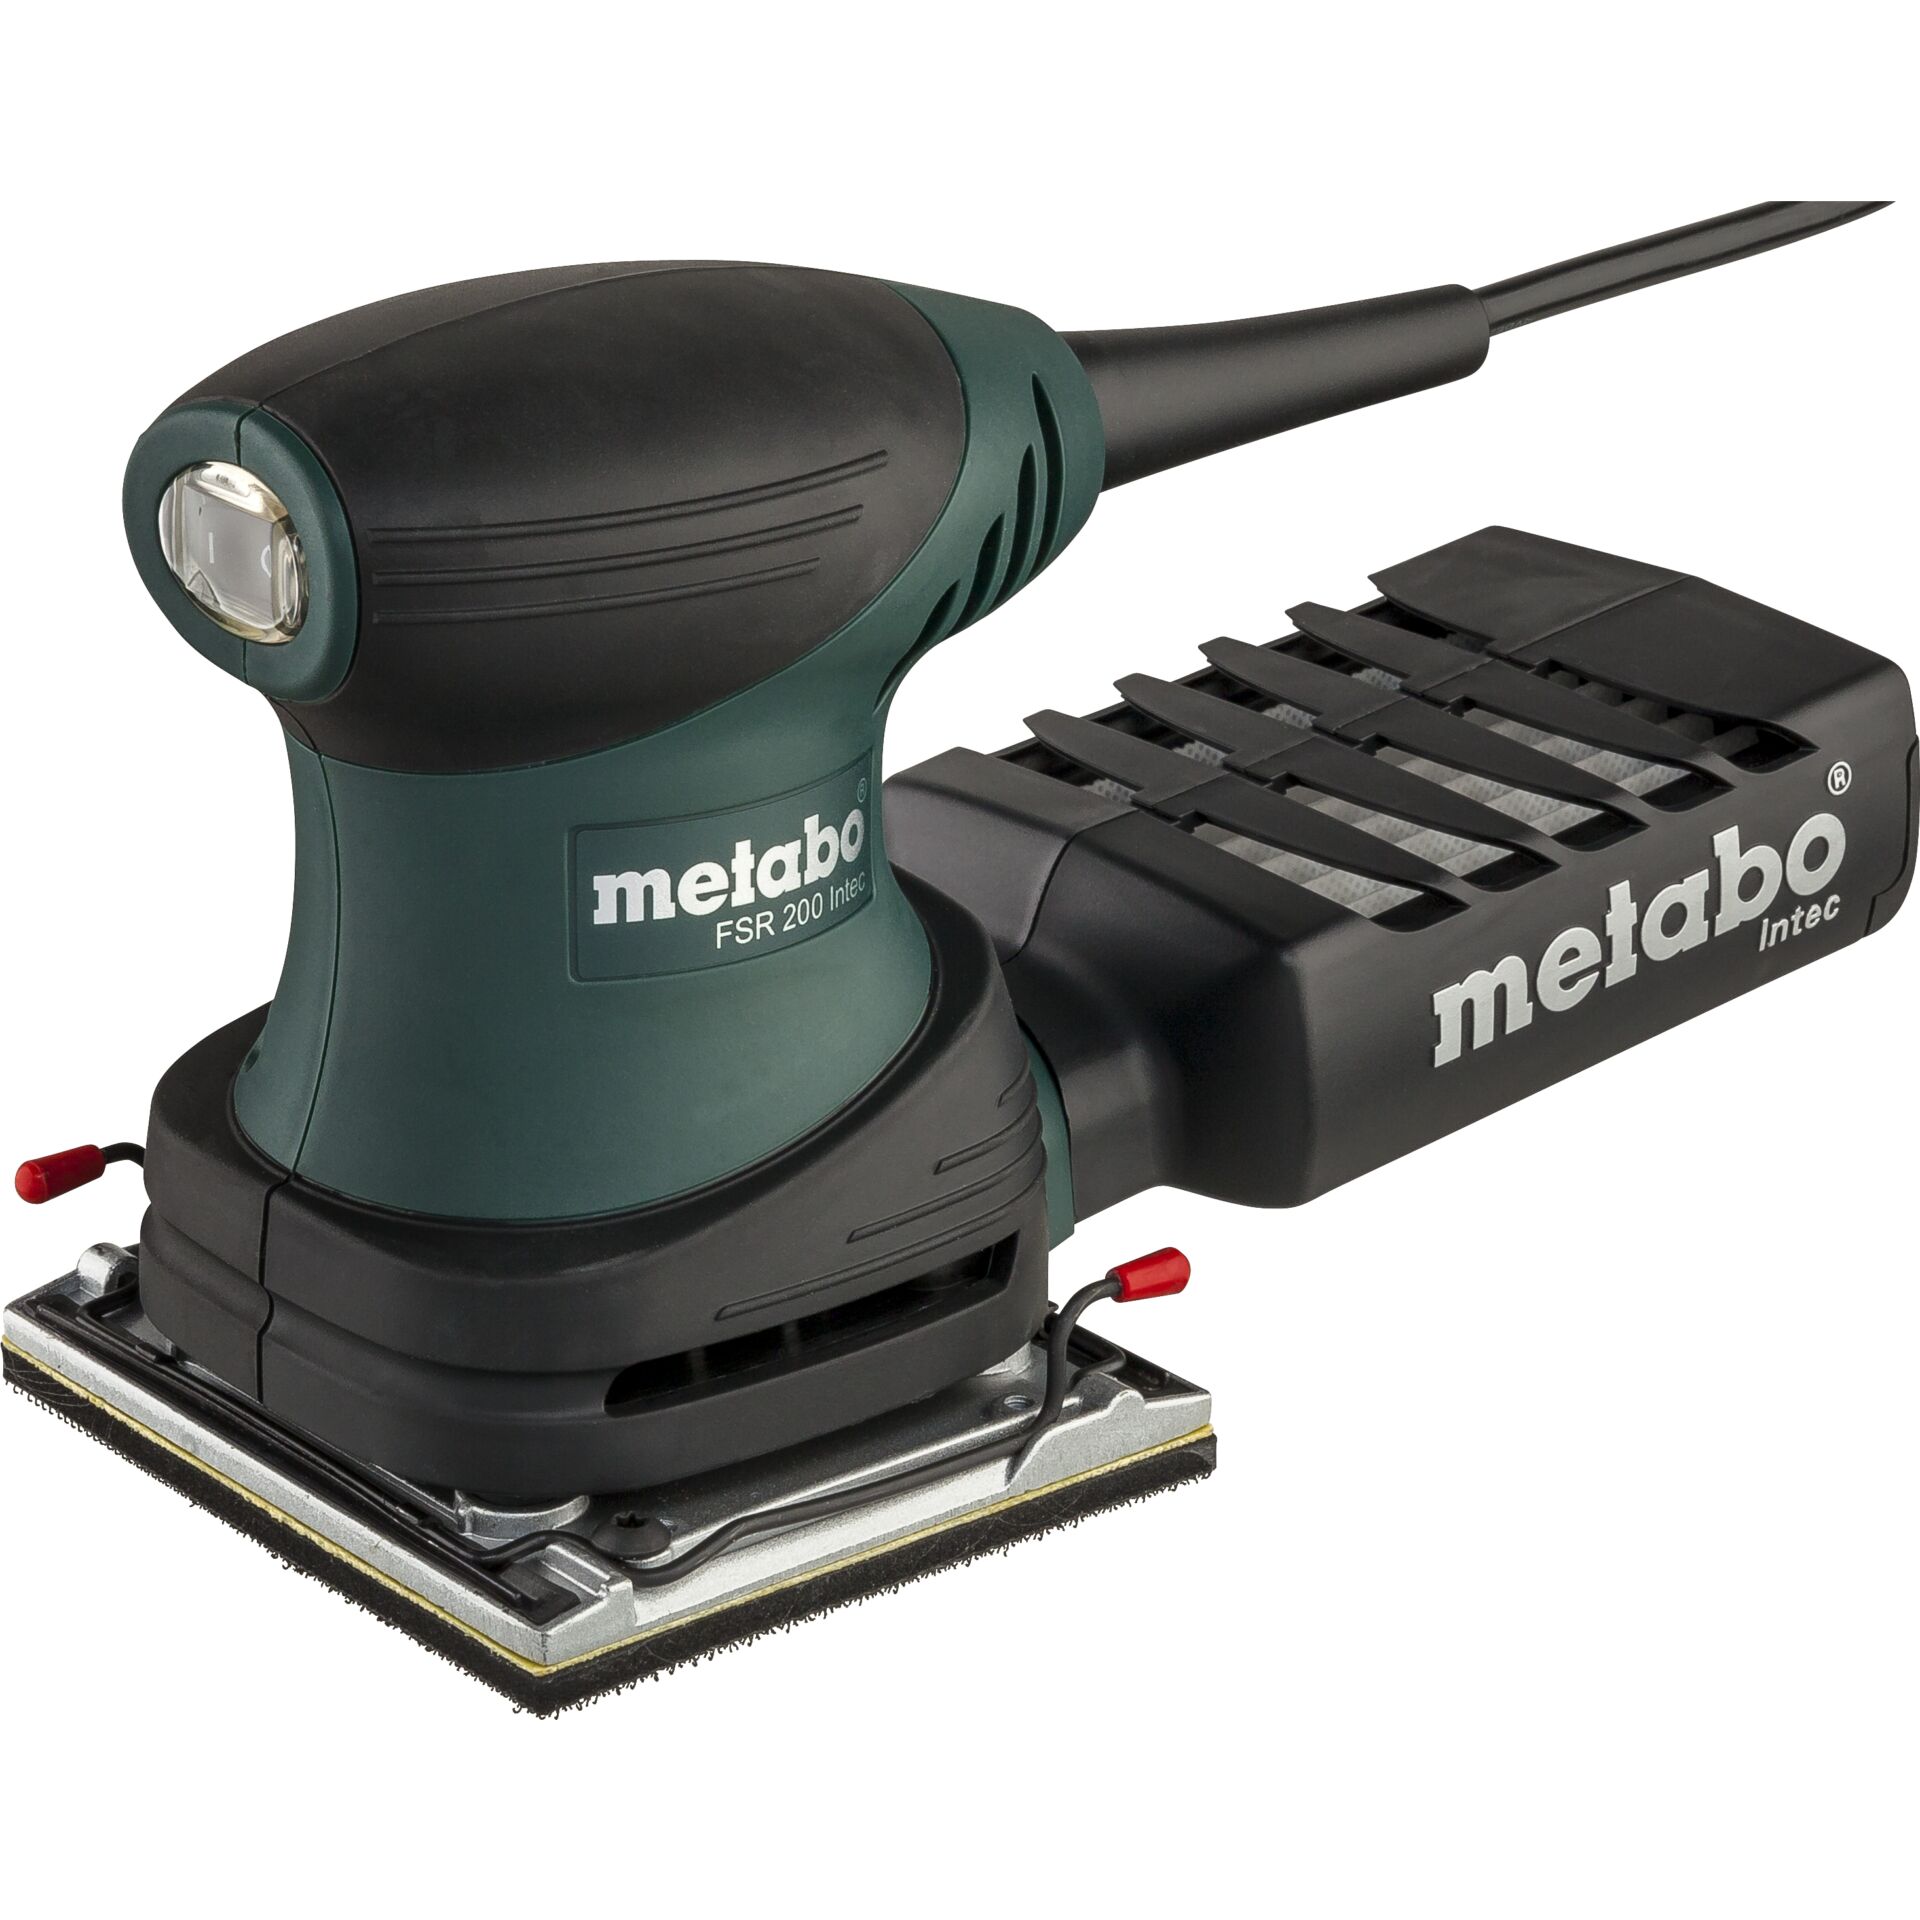 Metabo FSR 200 Intec Fäustlingssander